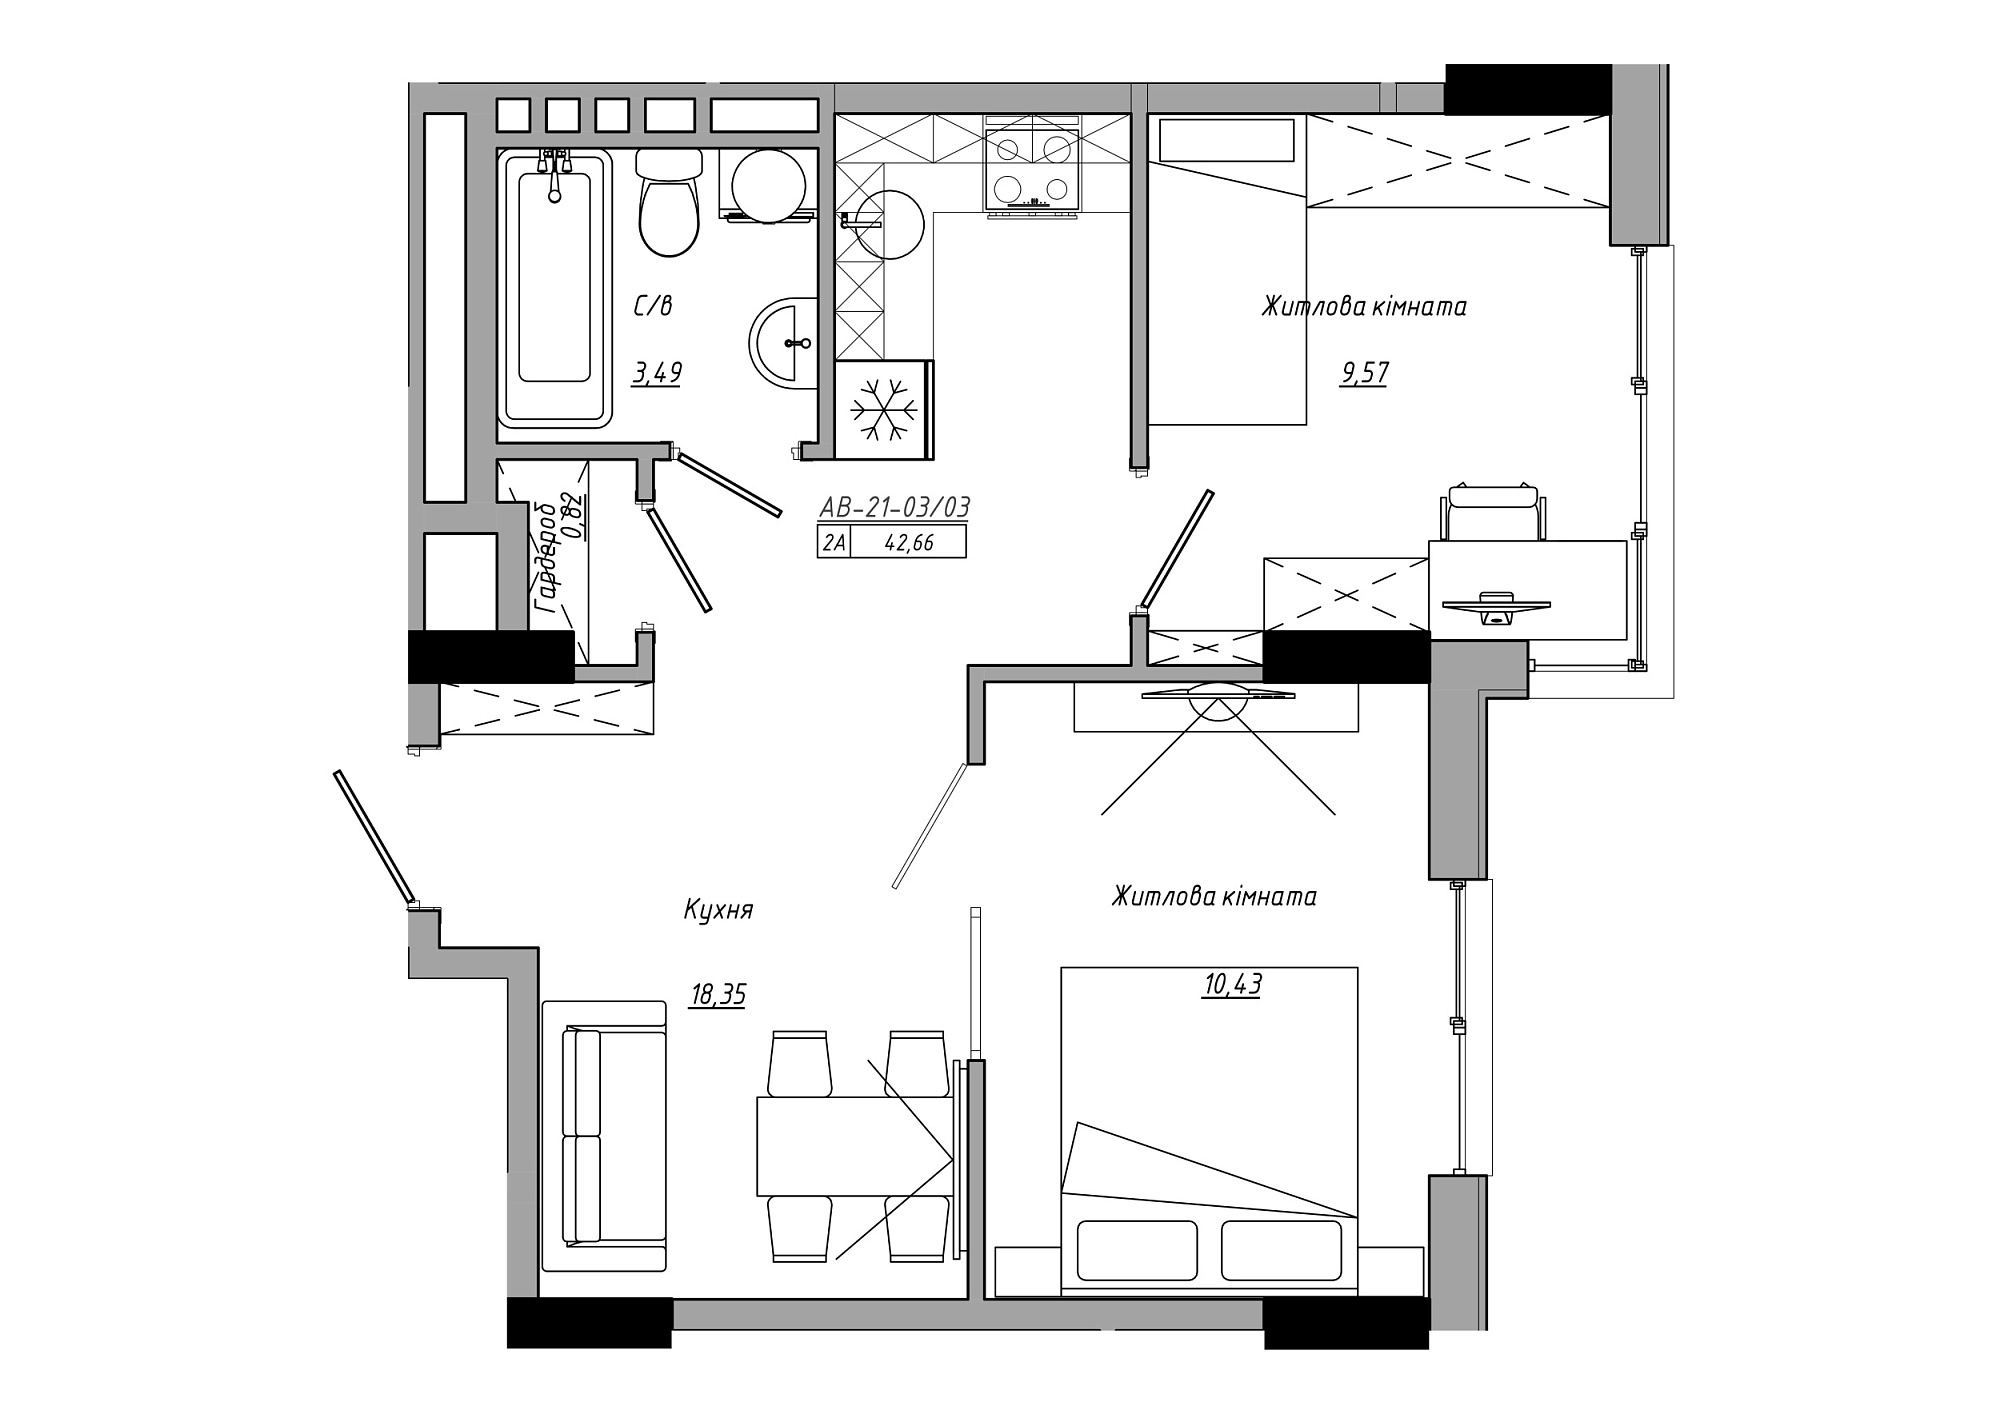 Планування 2-к квартира площею 42.66м2, AB-21-03/00003.